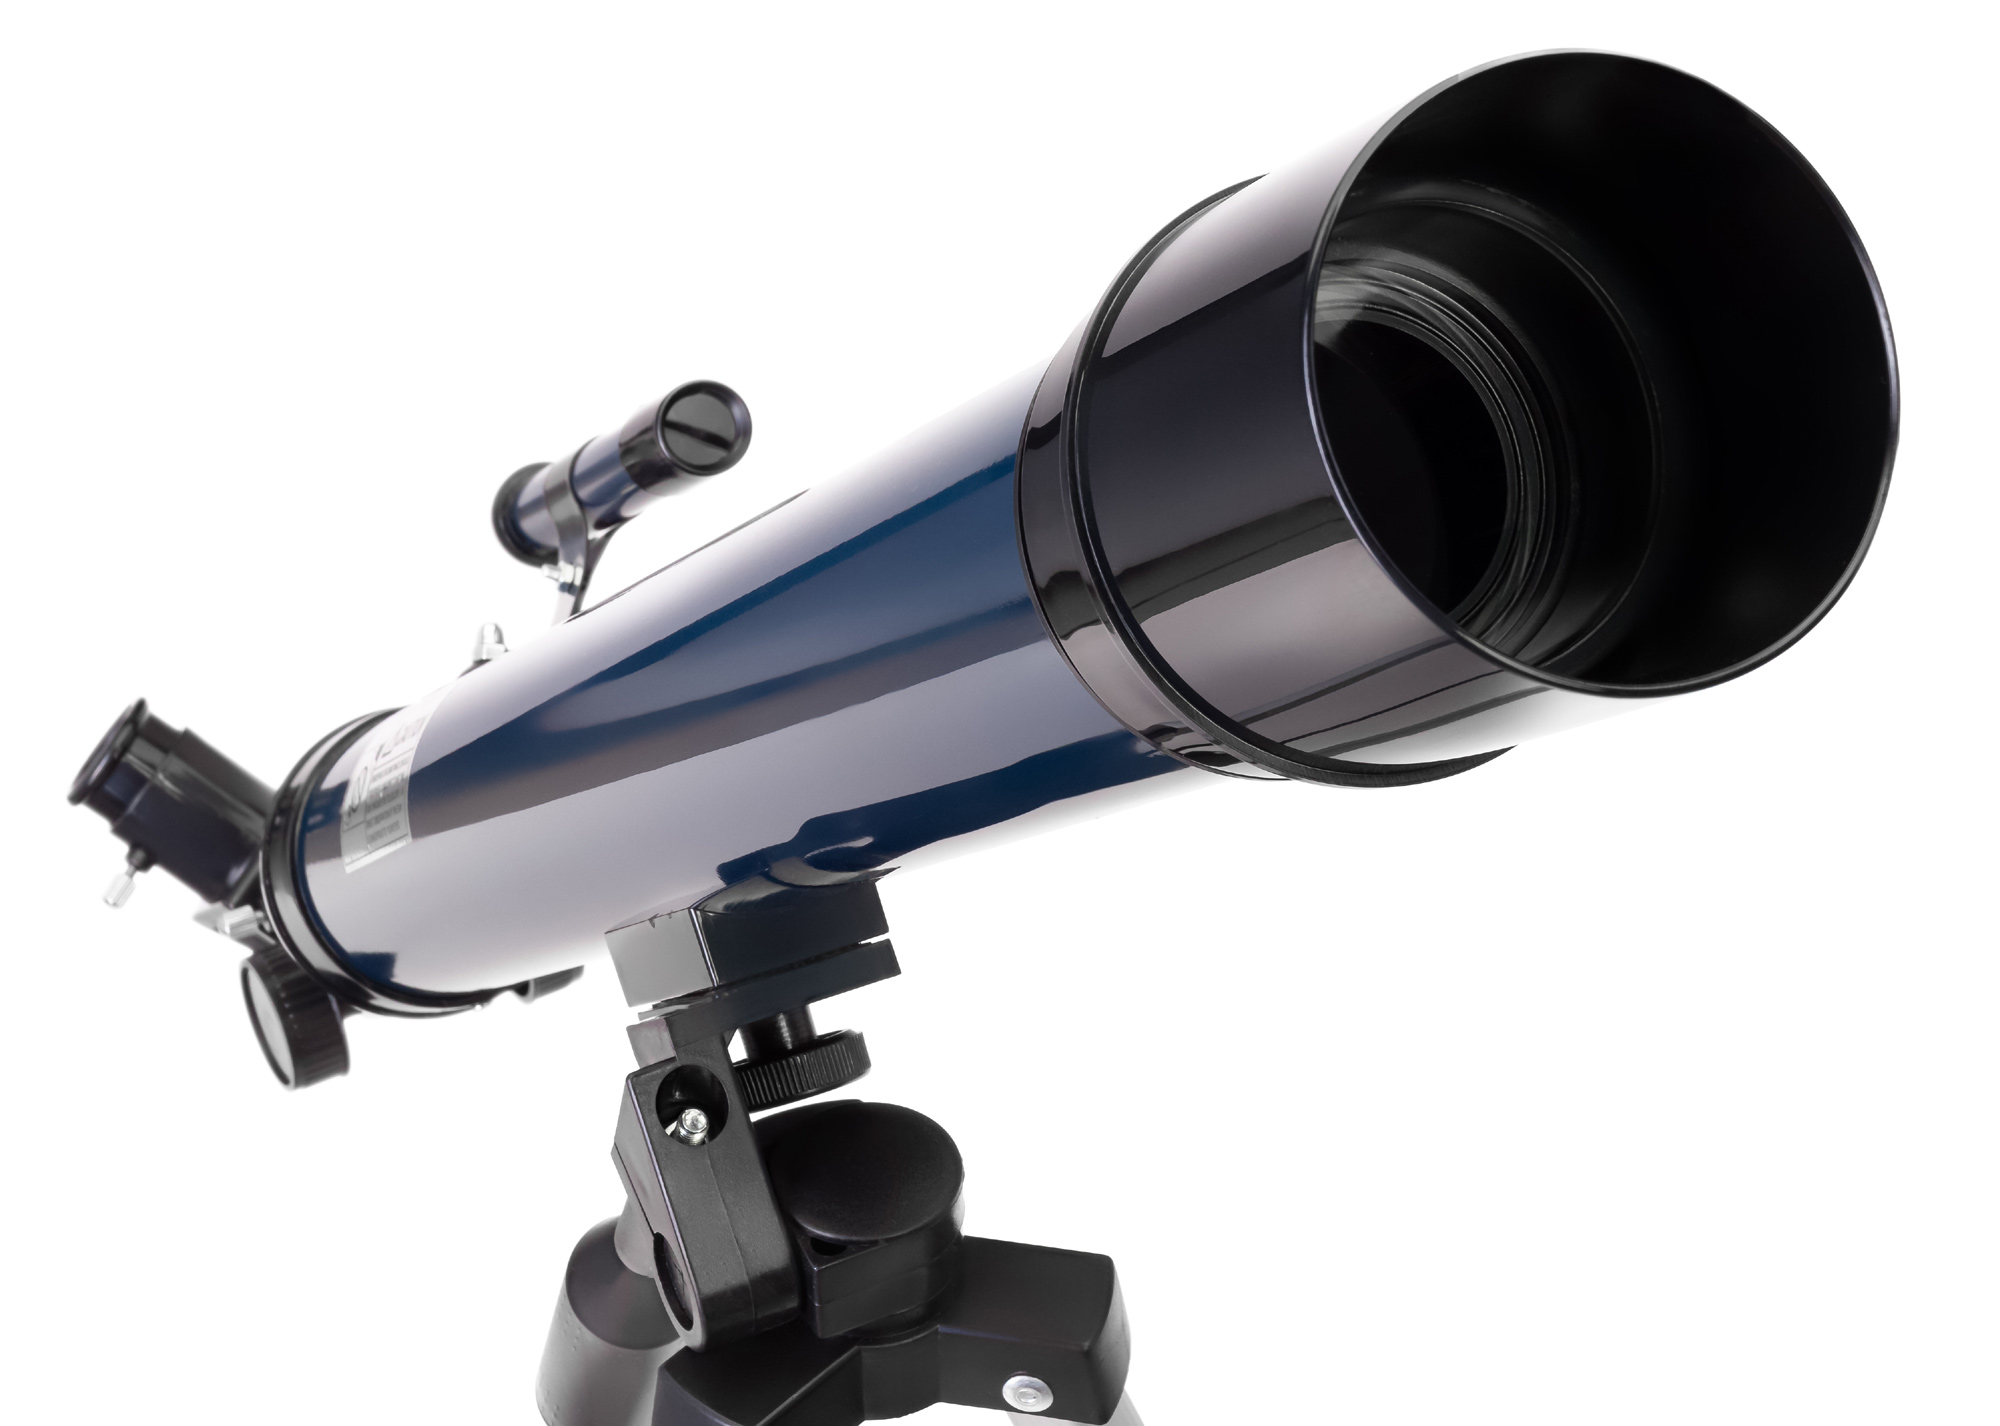 Набор Discovery Scope 3 с книгой Набор из трех оптических приборов: телескопа, микроскопа и бинокля. В комплекте более 30 аксессуаров и познавательная книга о космосе